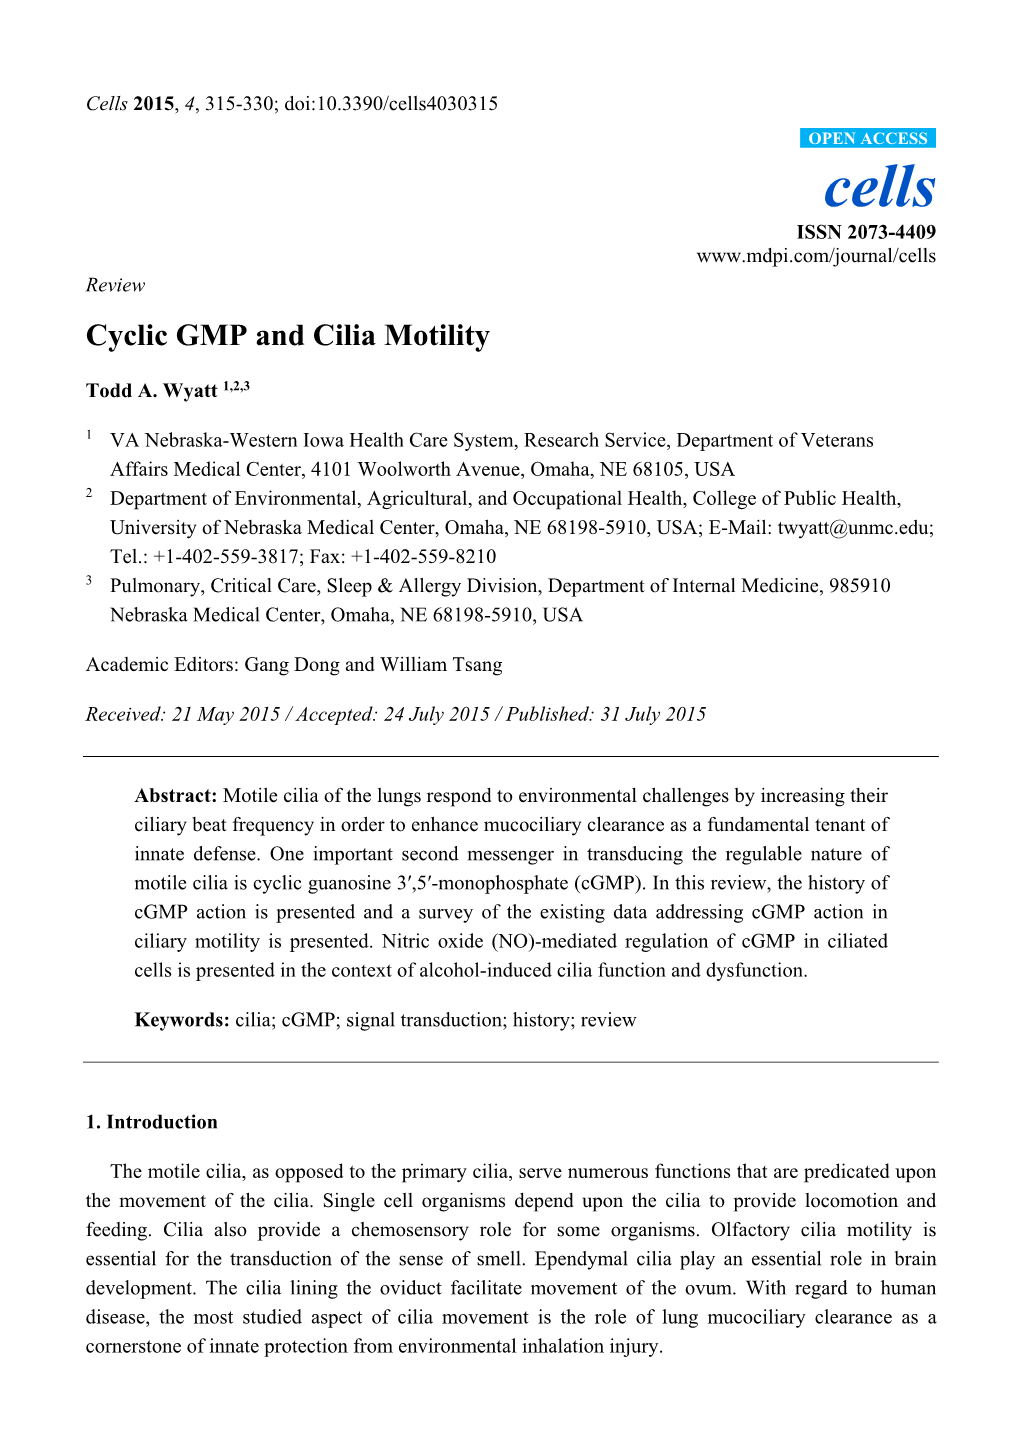 Cyclic GMP and Cilia Motility